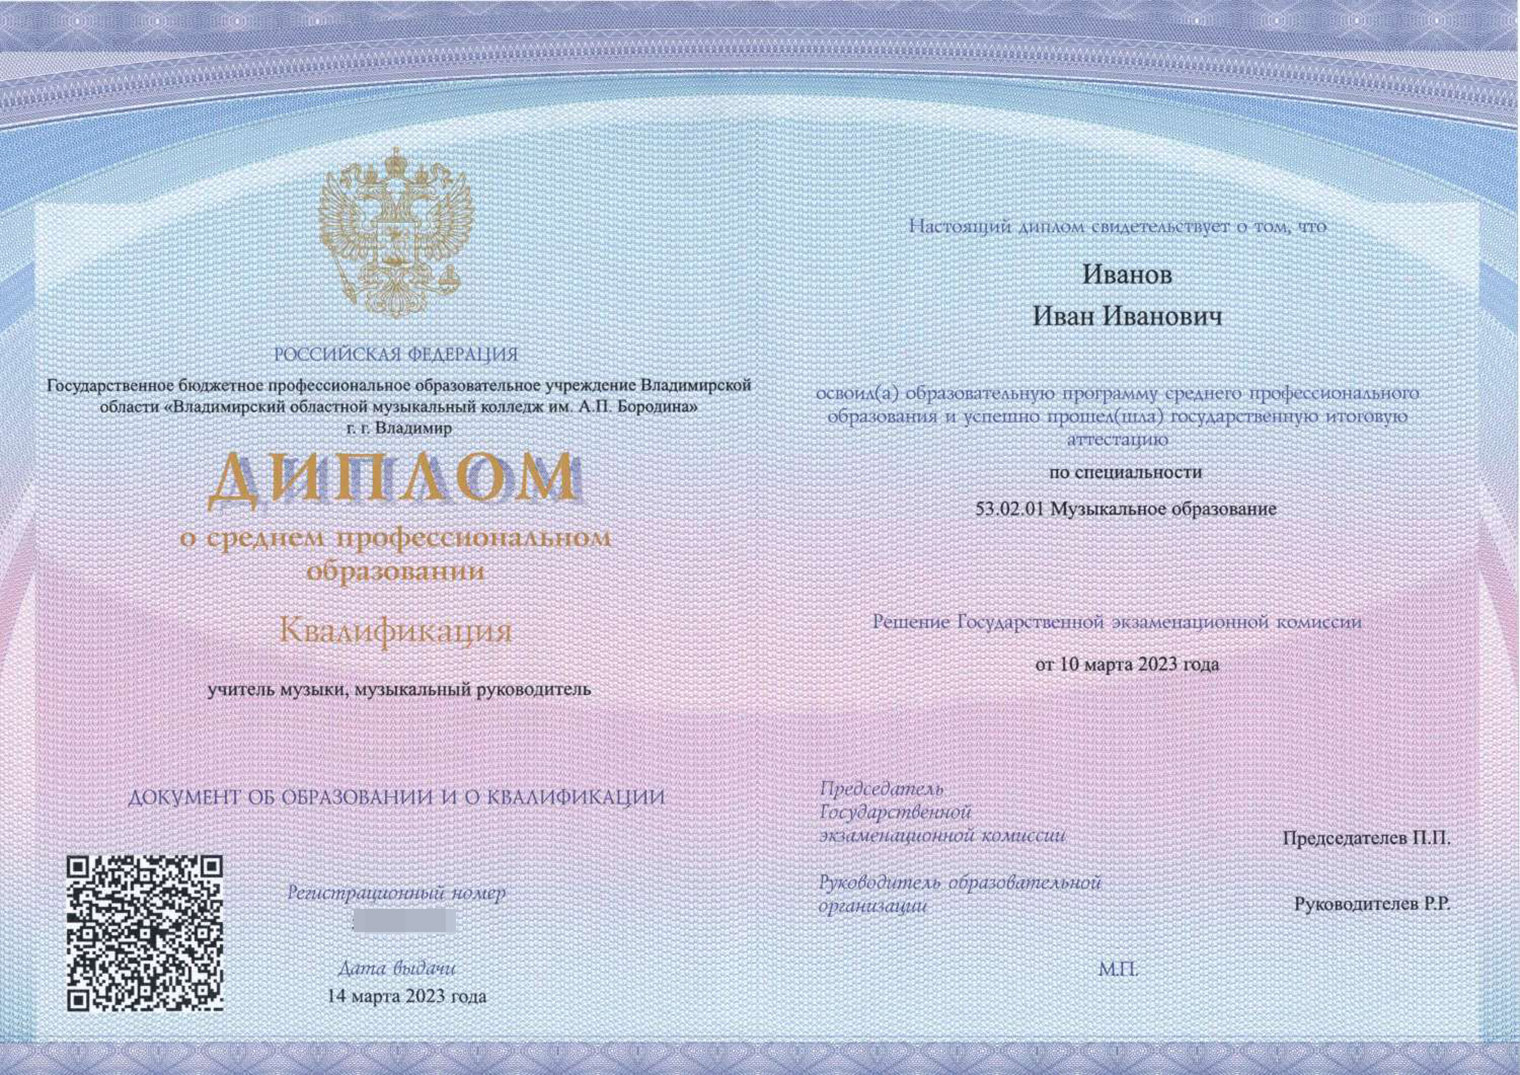 В новом дипломе от 2023 года QR-код находится в левой части разворота. Источник: armregistr.ru